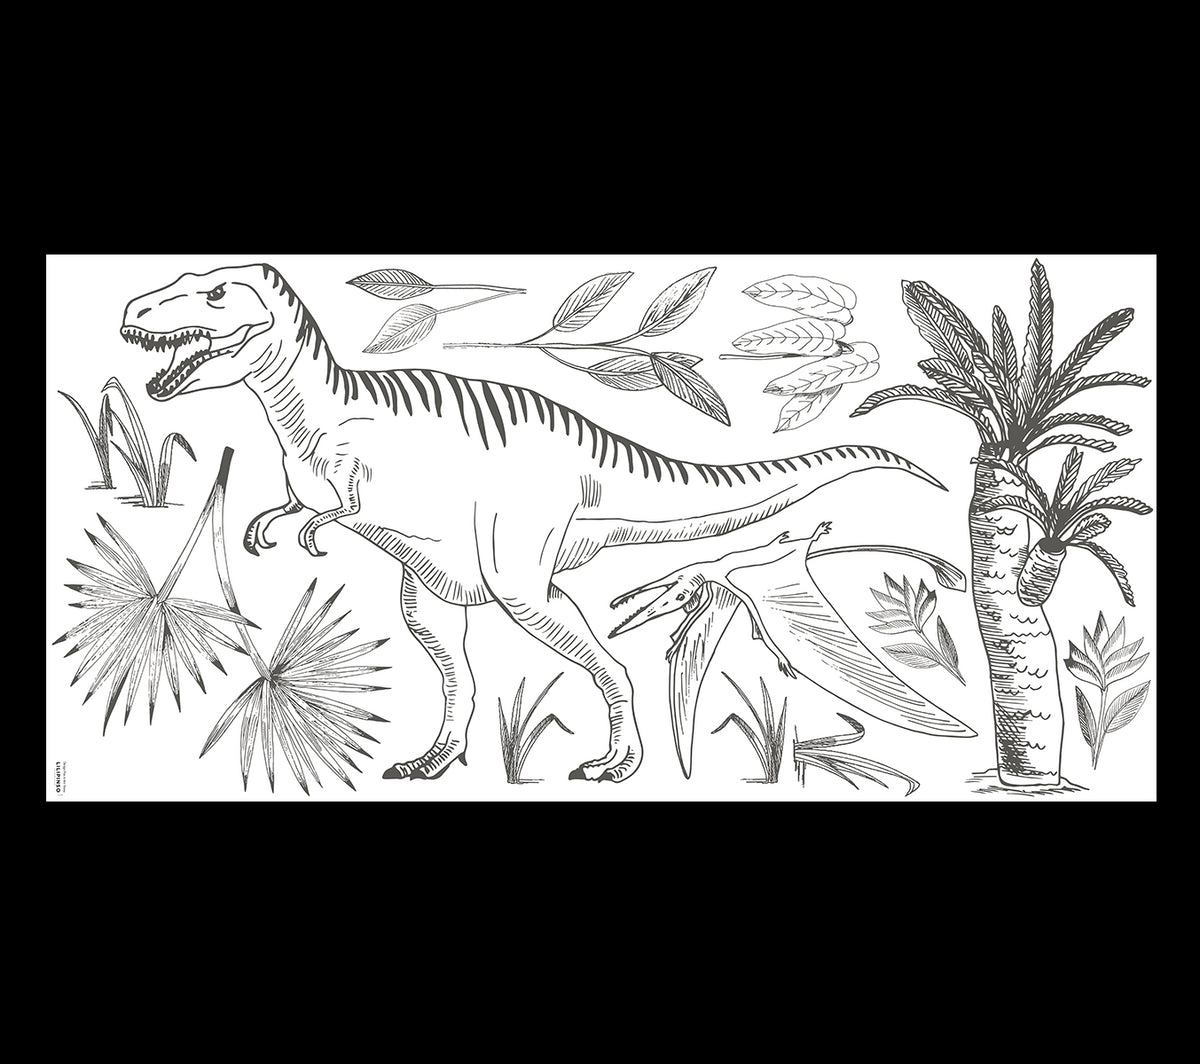 DINOSAURI - Adesivi murali muraux - Dinosauri: T - rex, pteranodon e palma